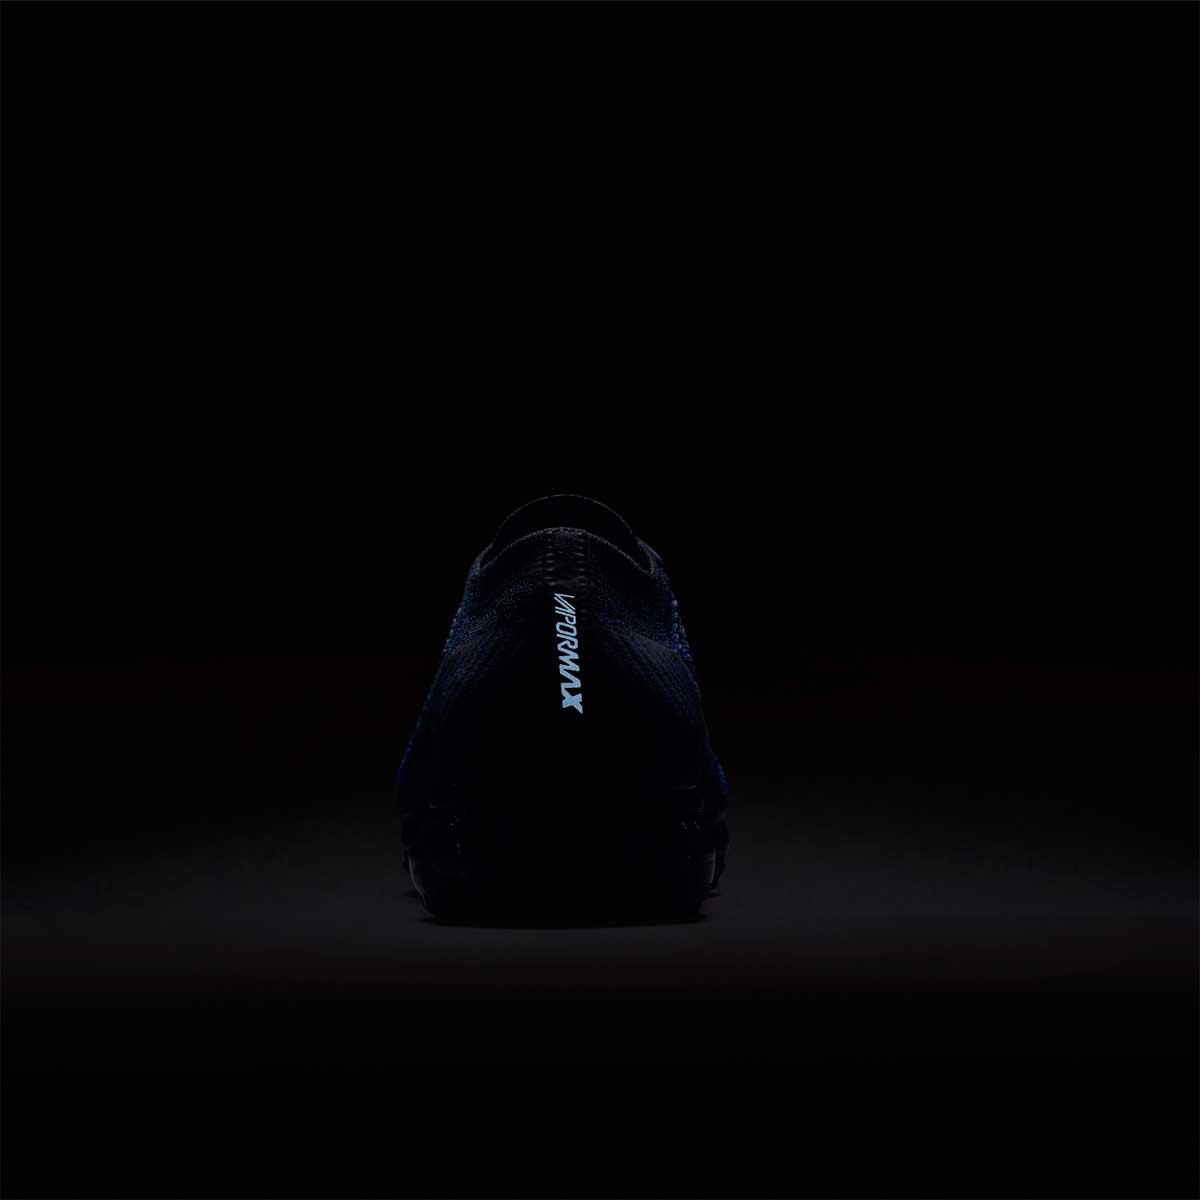 Кроссовки для бега Nike AIR VAPORMAX FLYKNIT